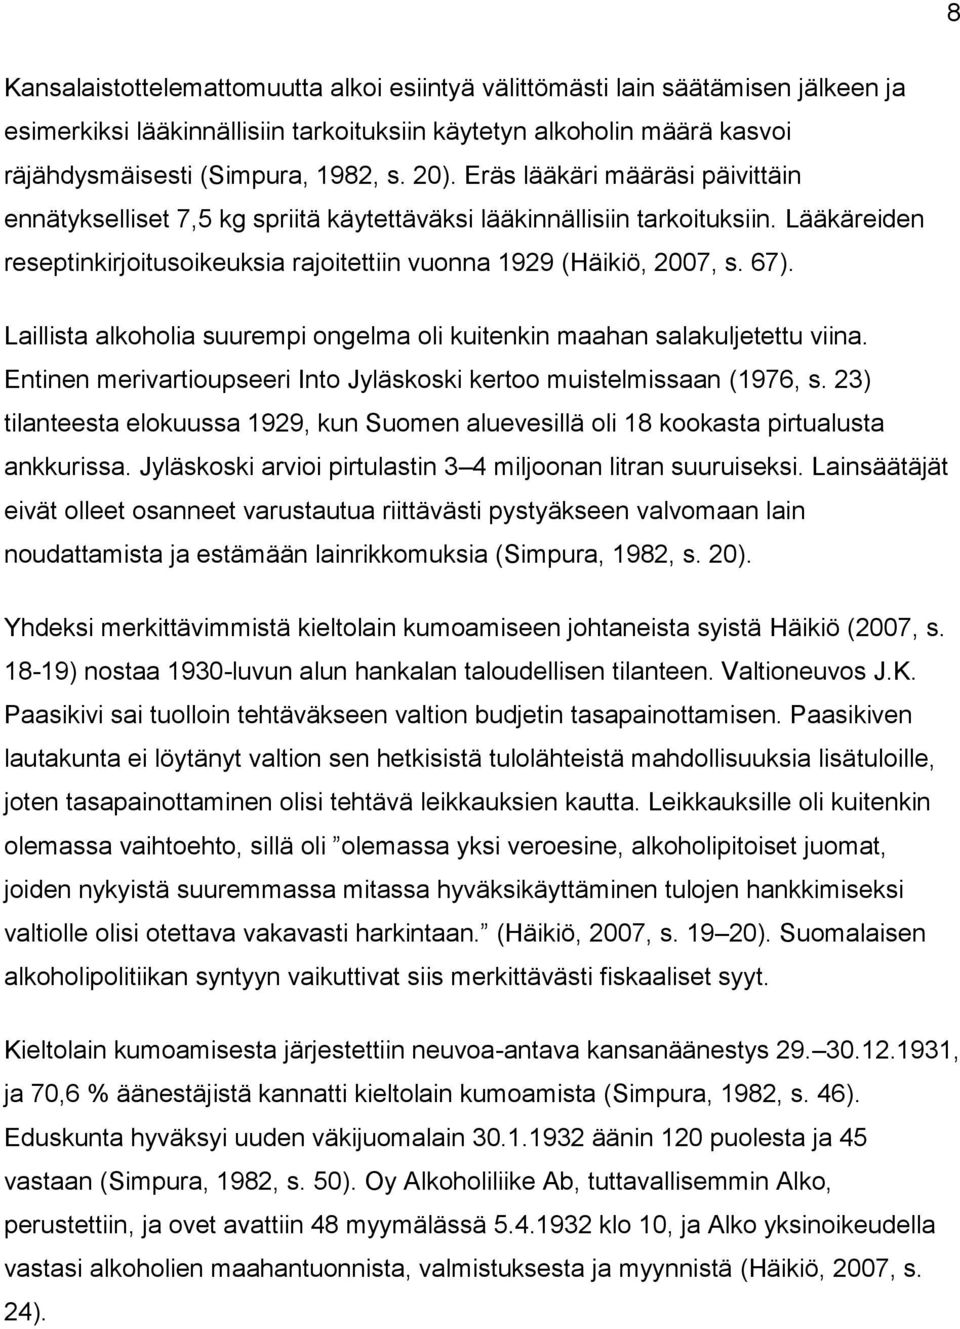 Laillista alkoholia suurempi ongelma oli kuitenkin maahan salakuljetettu viina. Entinen merivartioupseeri Into Jyläskoski kertoo muistelmissaan (1976, s.